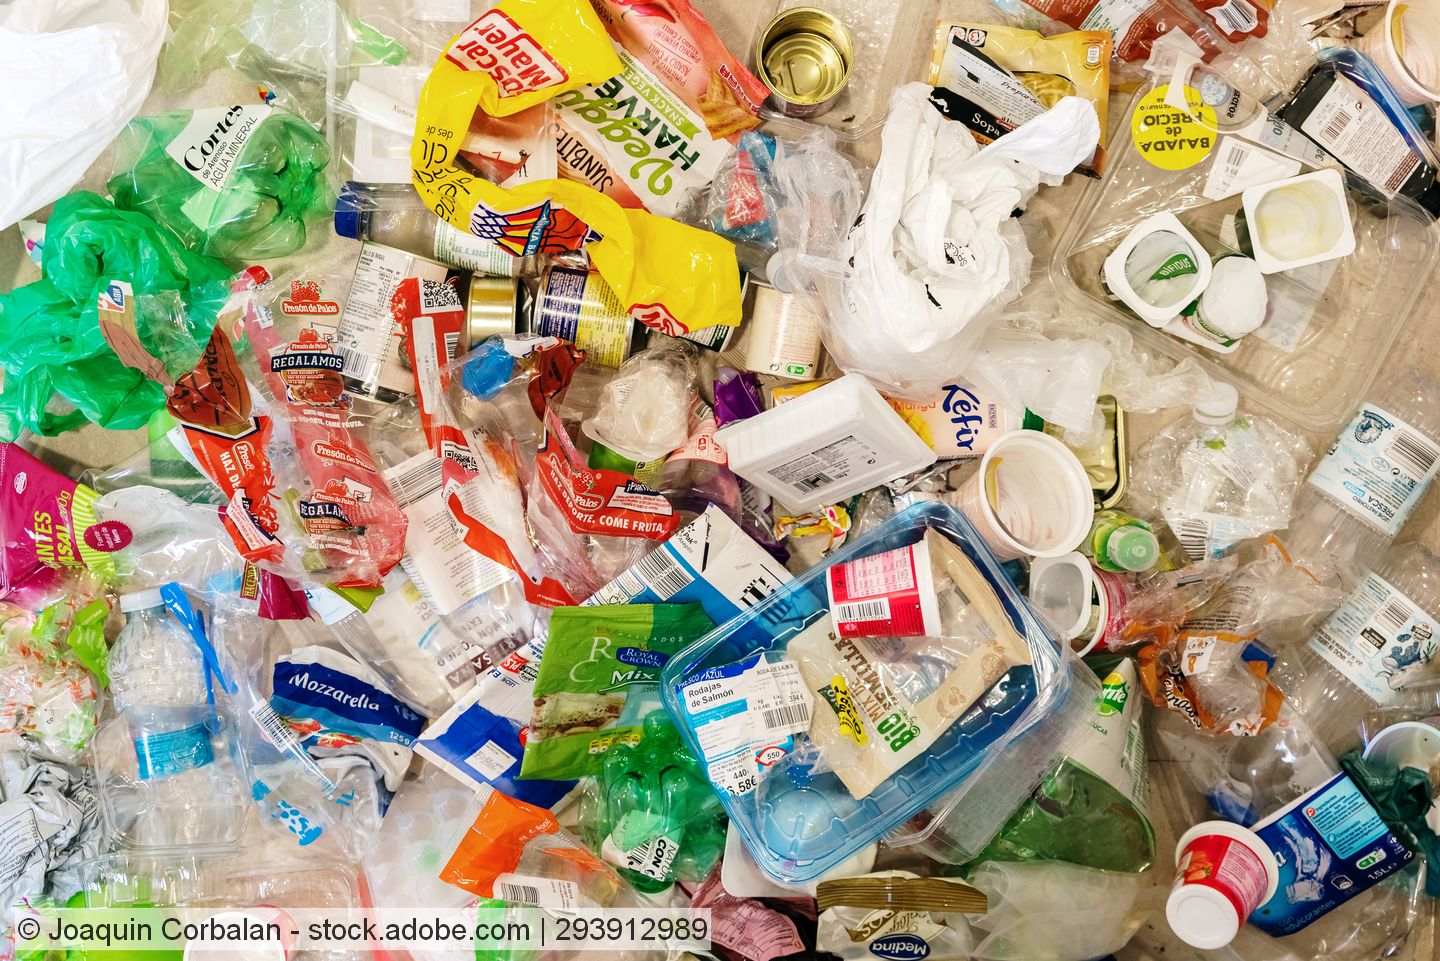 Plastic packaging waste